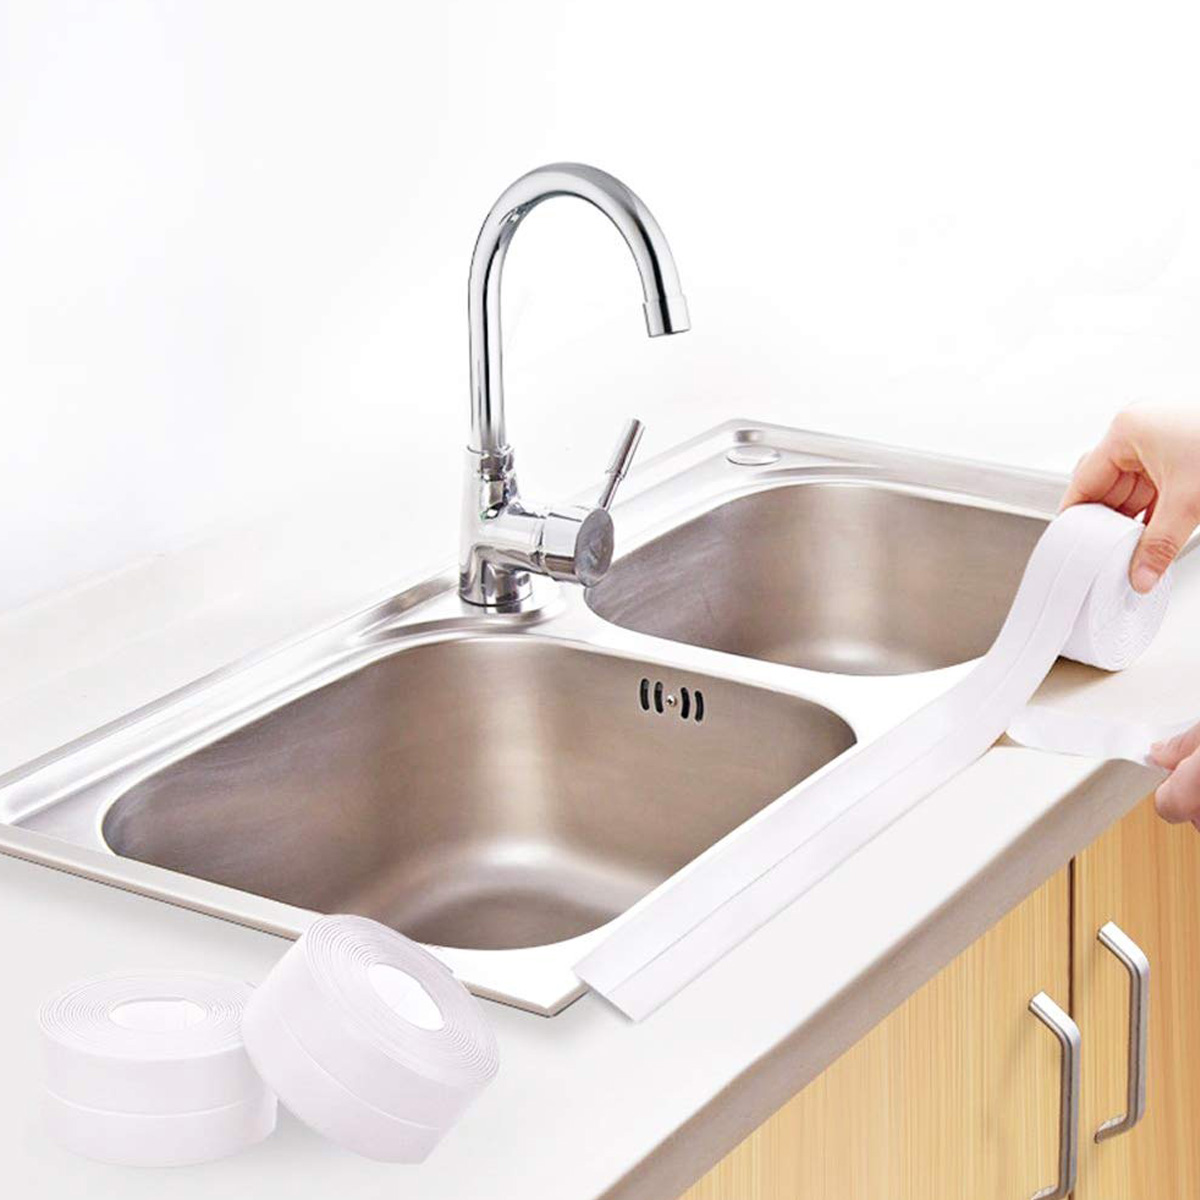 Sızdırmazlık Bandı <p>* GÜÇLÜ YAPIŞIR , ULTRA DAYANIKLI VE UZUN ÖMÜRLÜDÜR<br />
* Banyolarda, duşakabinlerde, küvetlerde, lavabolarda ve mutfakta sızdırmazlık sağlamak için kullanılır. Kararma yapmaz, her zaman temiz kalır. Temzilik malzemelerine karşı dayanıklıdır</p>
